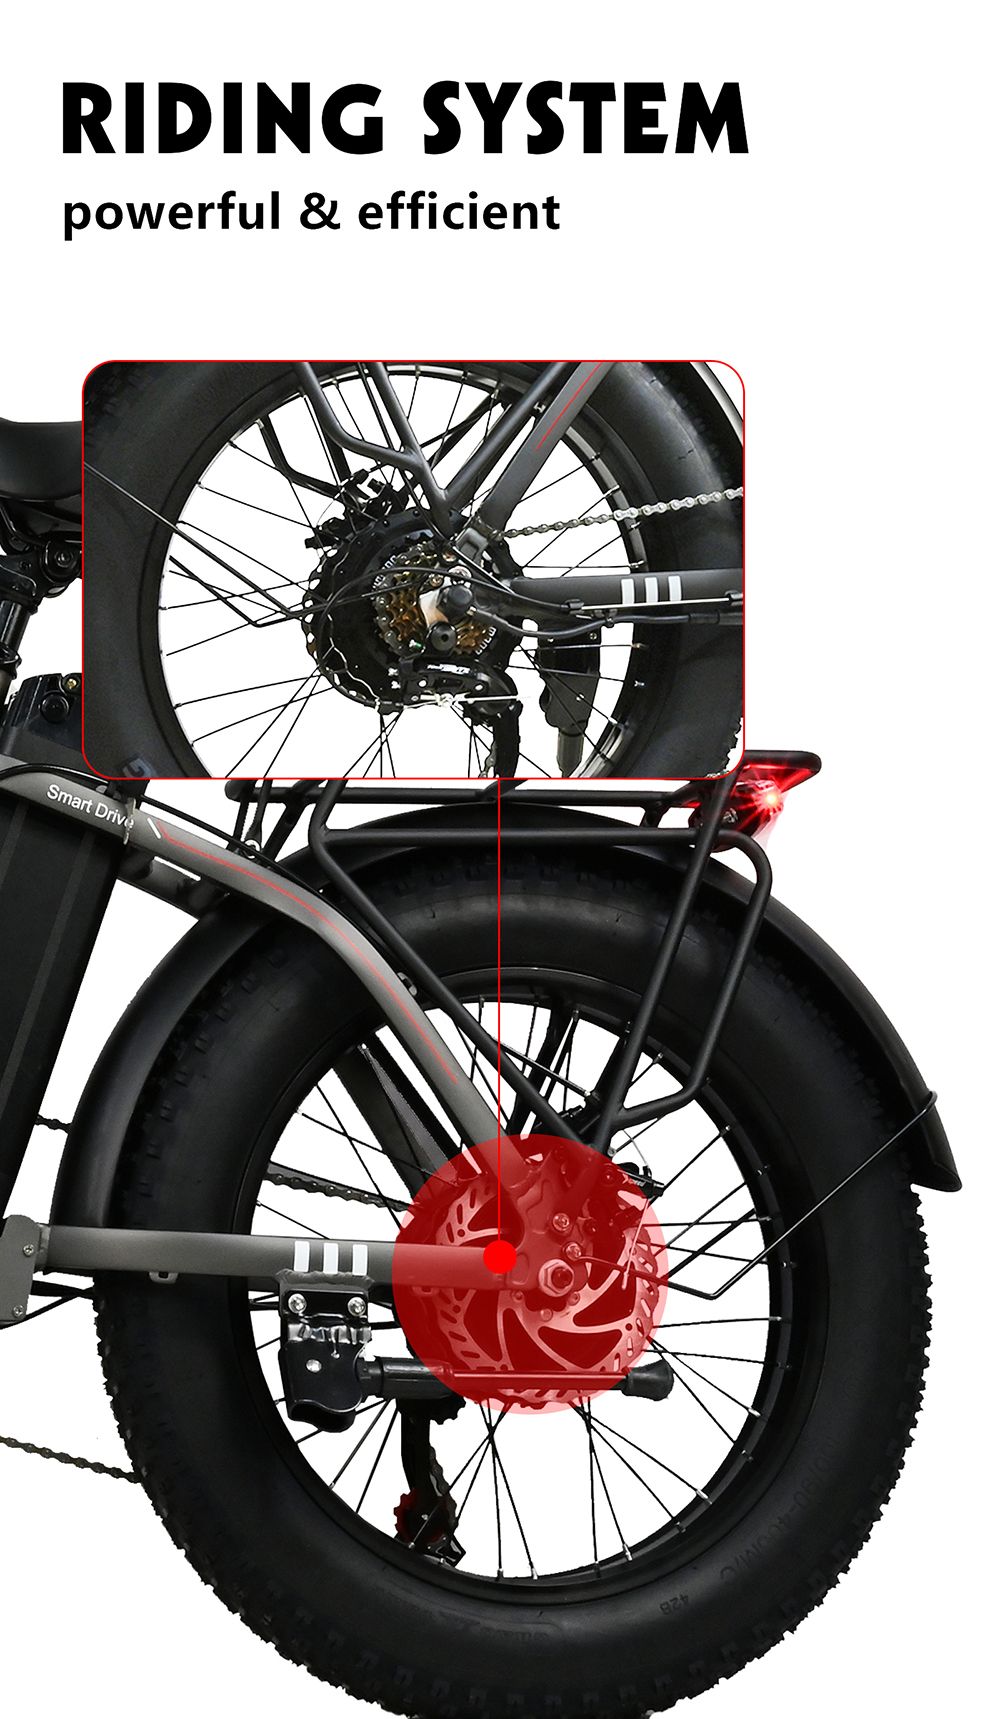 BAOLUJIE DZ2001 Składany rower elektryczny, akumulator 48 V 12 Ah, silnik 500 W, opony 20 * 4.0 cala, 45 km/h, maksymalna prędkość, zasięg 30-40 km, hamulec tarczowy - szary